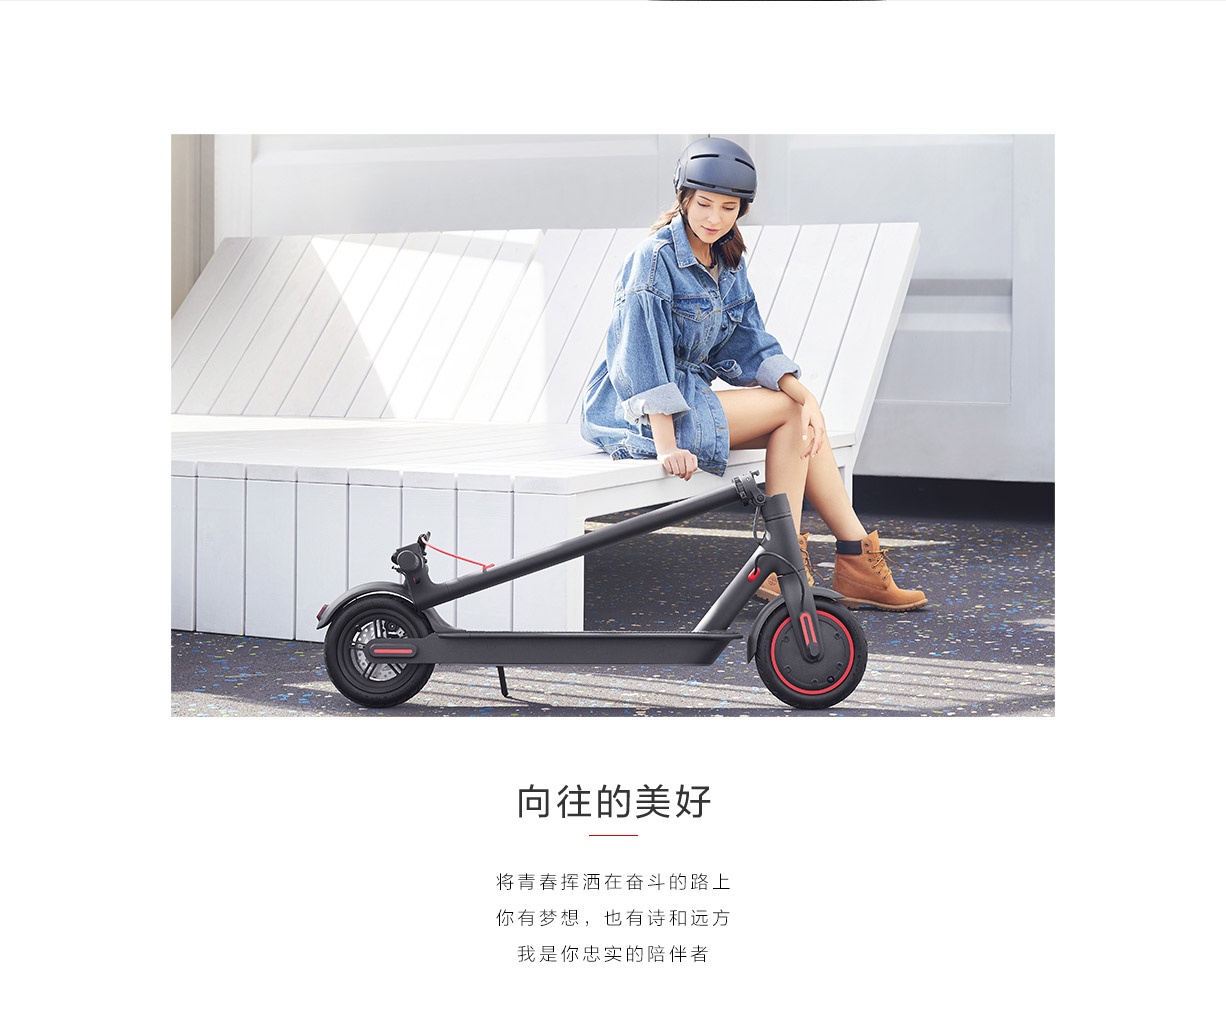 小米米家電動滑板車Pro版在中國開始發售 最長45公里續航 售價約新台幣13000元